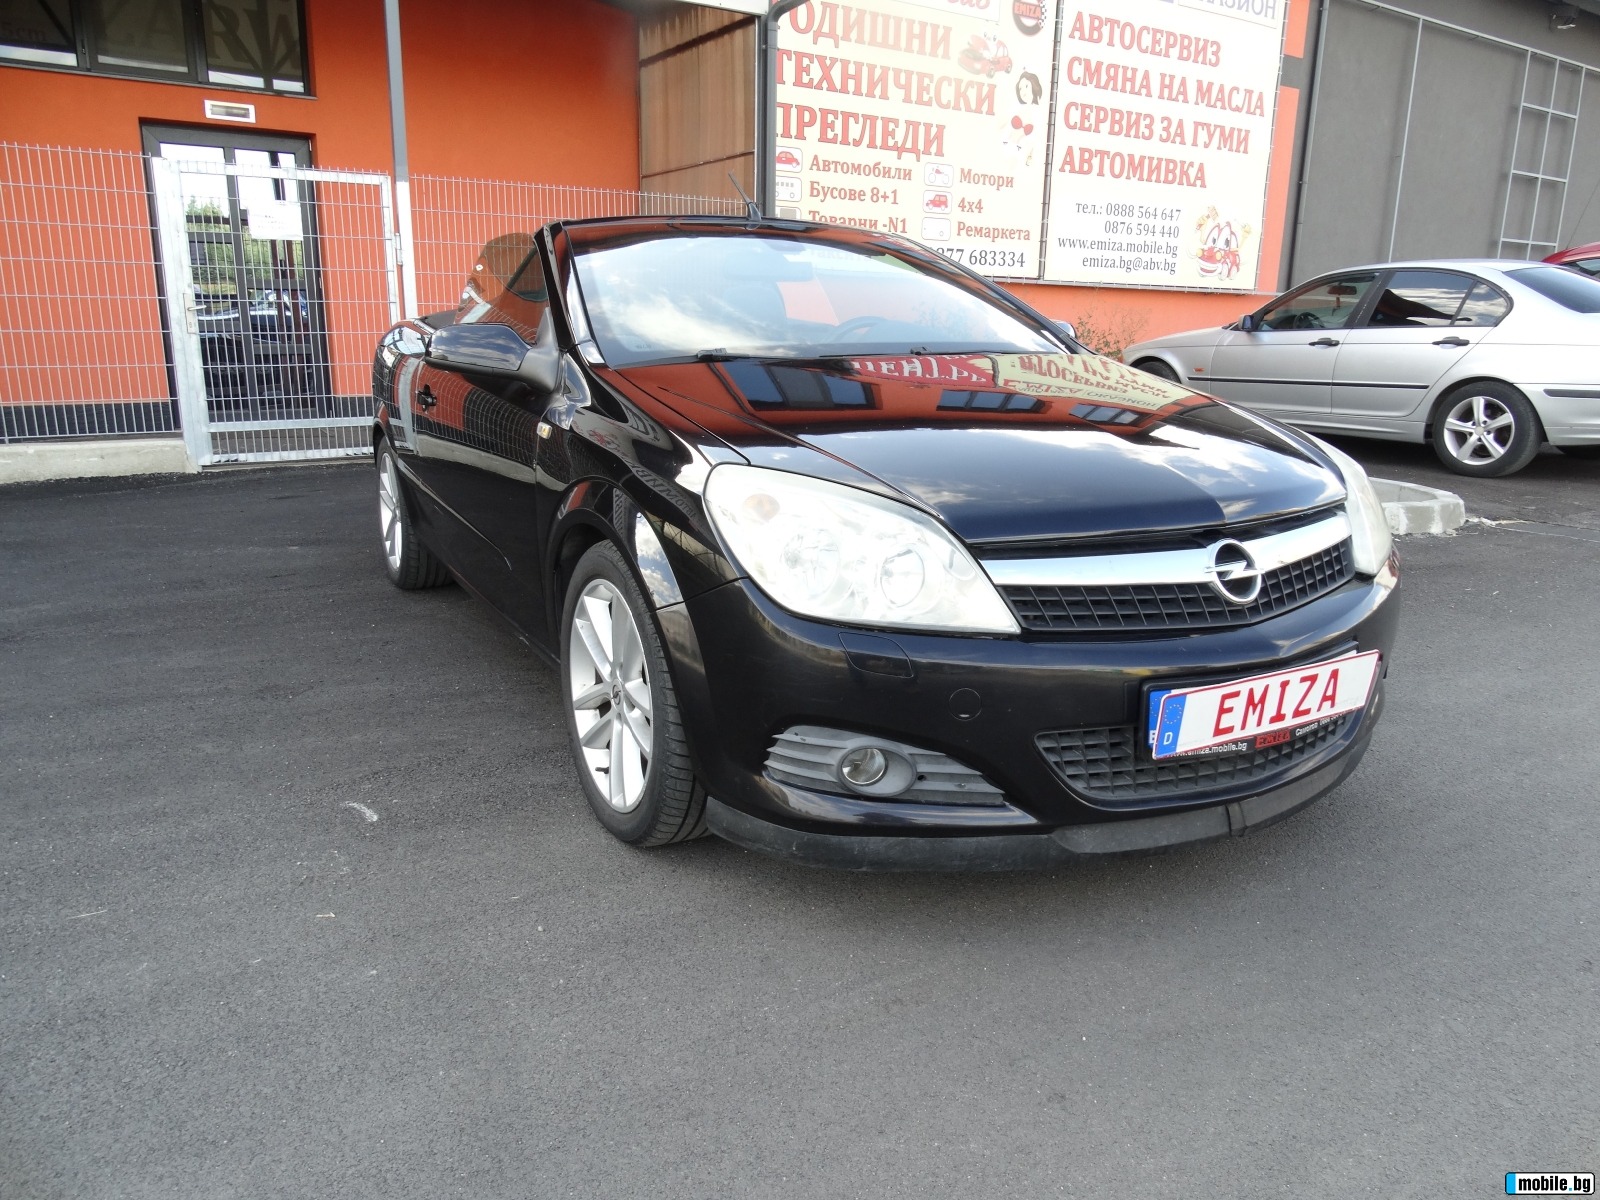     Opel Astra 1.9 ECOTEC